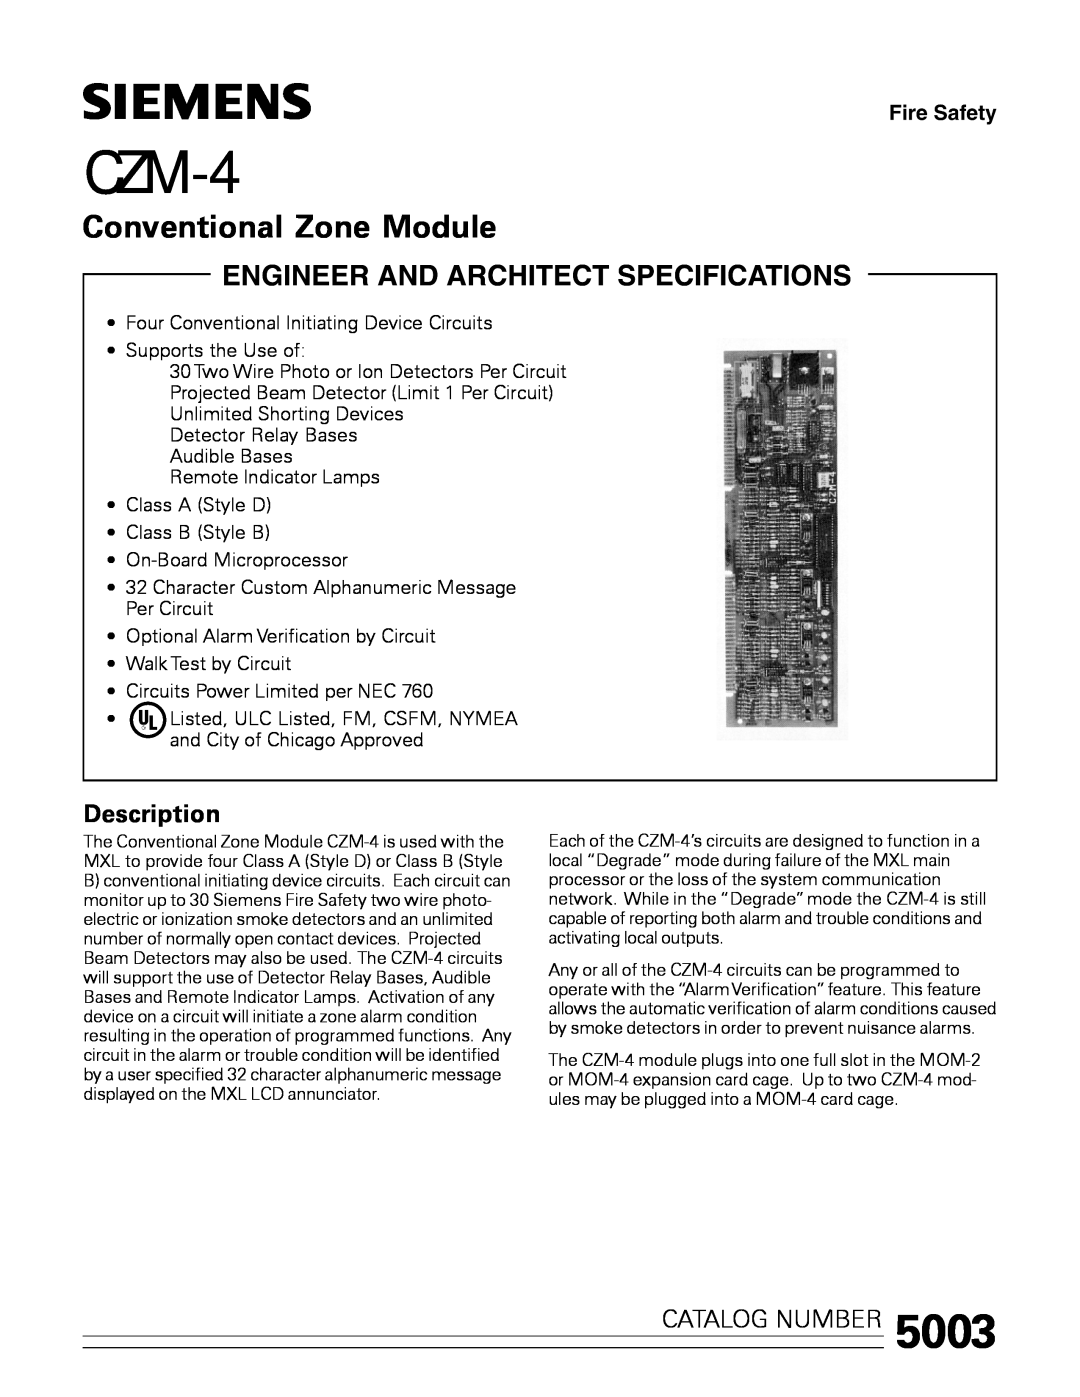 Siemens CZM-4 manual Description, Conventional Zone Module, Catalog Number 